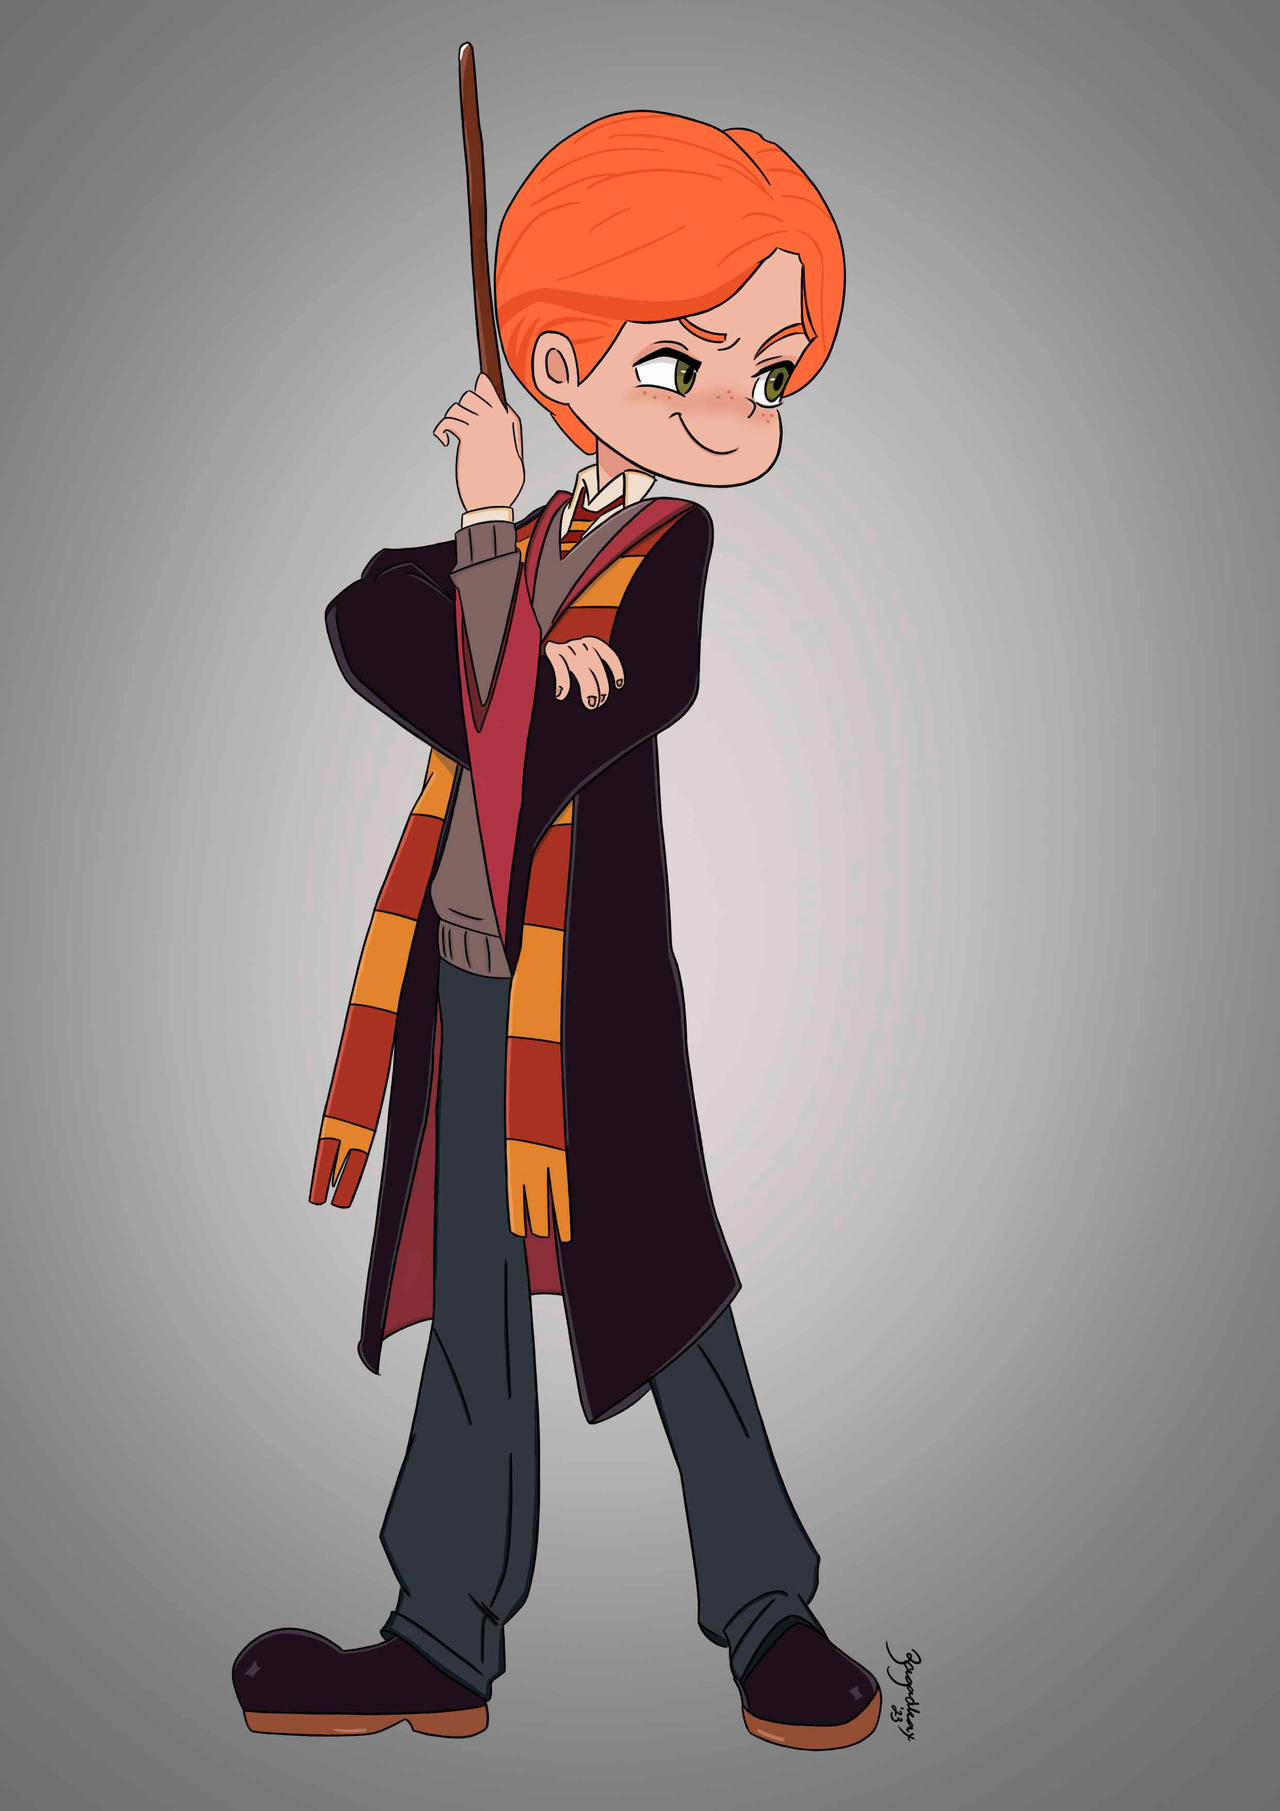 Ron Weasley by Zagadkax on DeviantArt